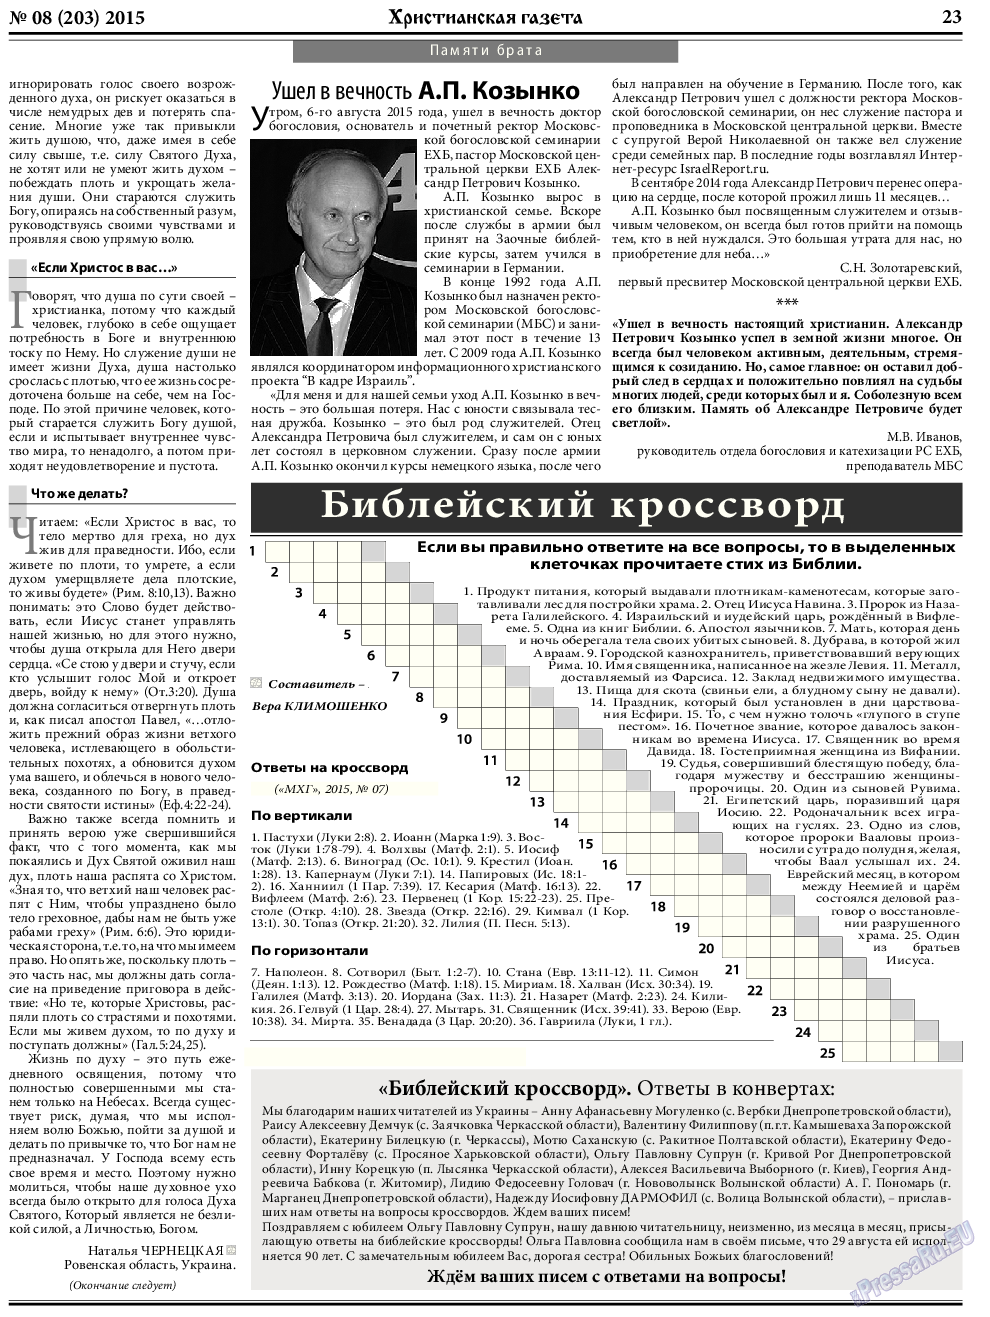 Христианская газета, газета. 2015 №8 стр.31